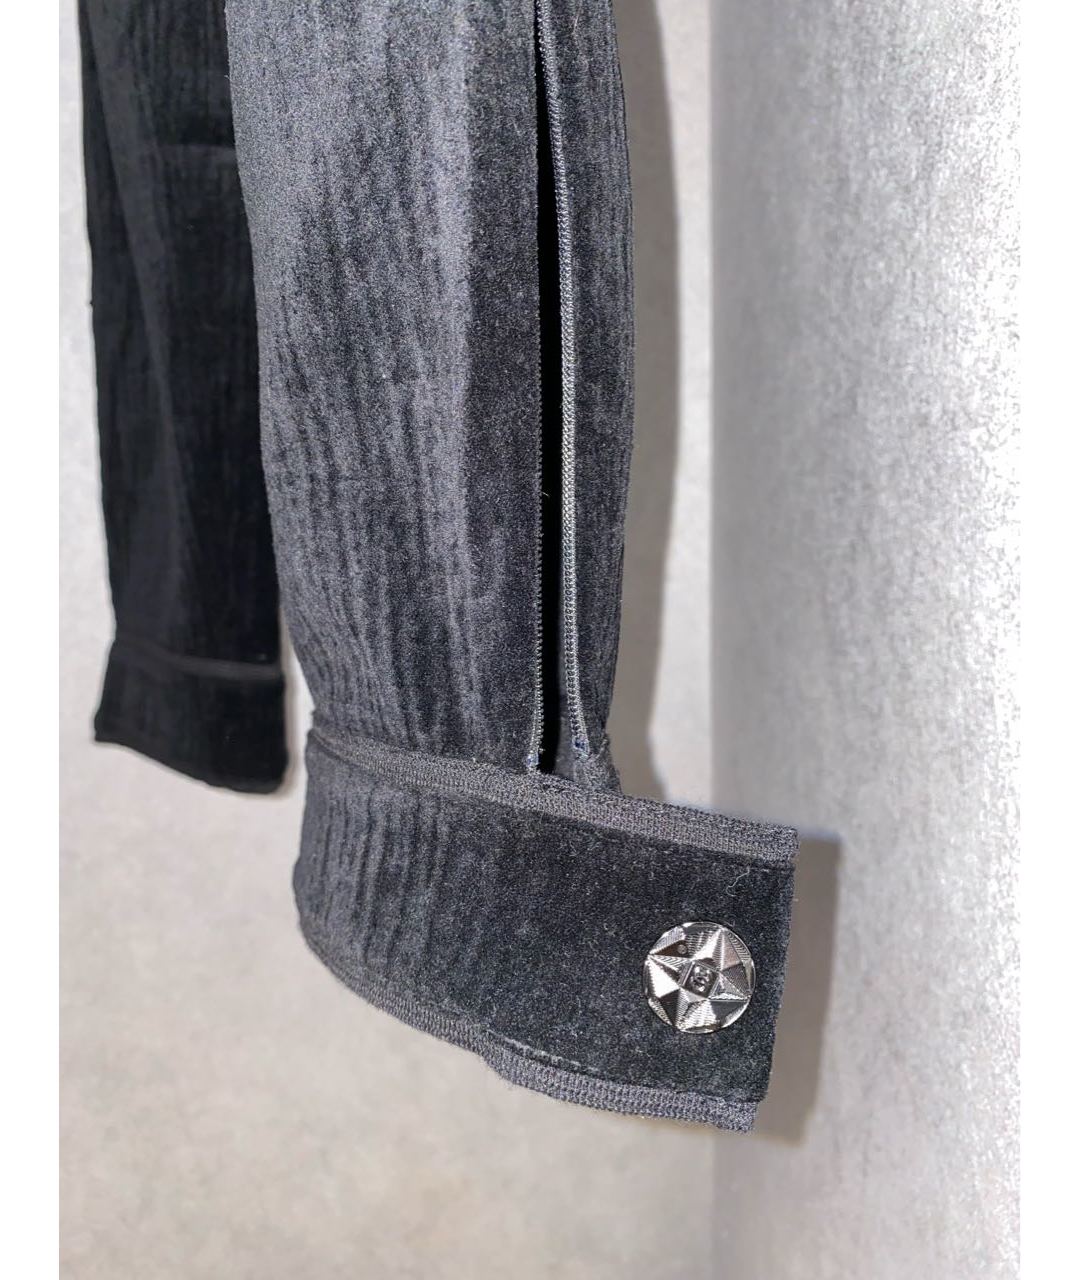 CHANEL PRE-OWNED Черные хлопковые прямые брюки, фото 3